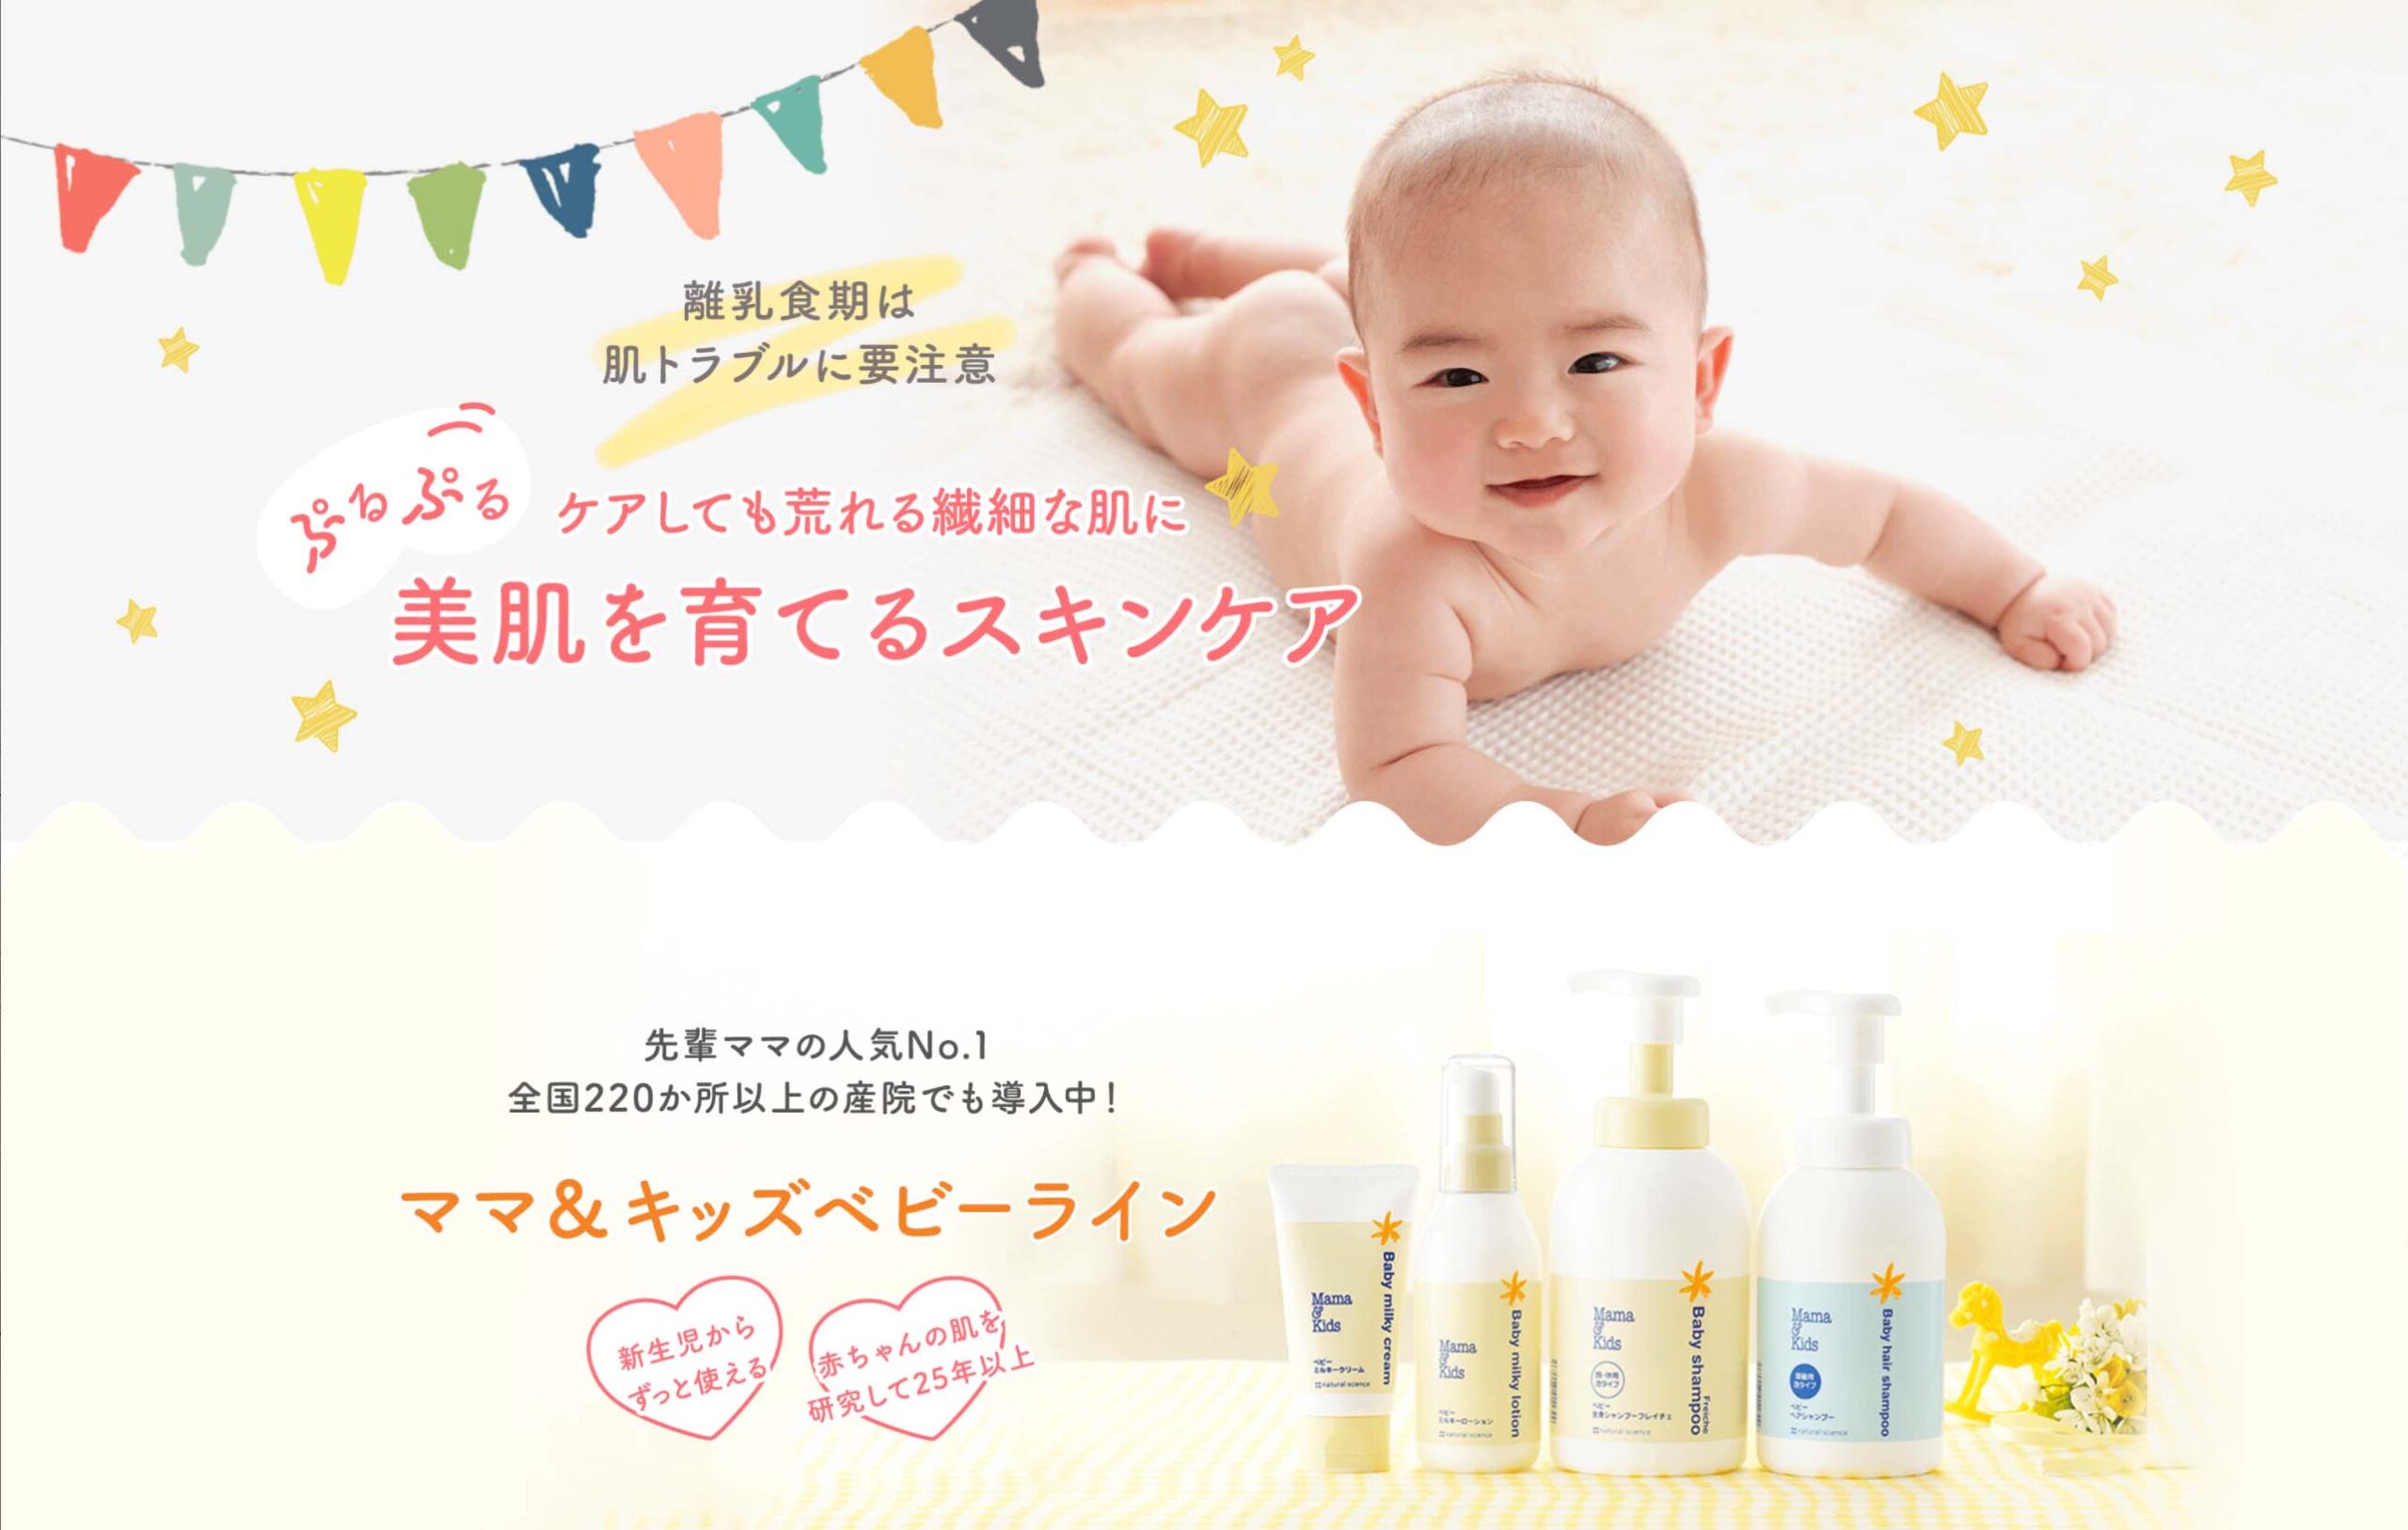 薬剤師ママが選ぶ 赤ちゃんの保湿クリーム ベビークリーム 口コミランキングbest15 東京ママlife